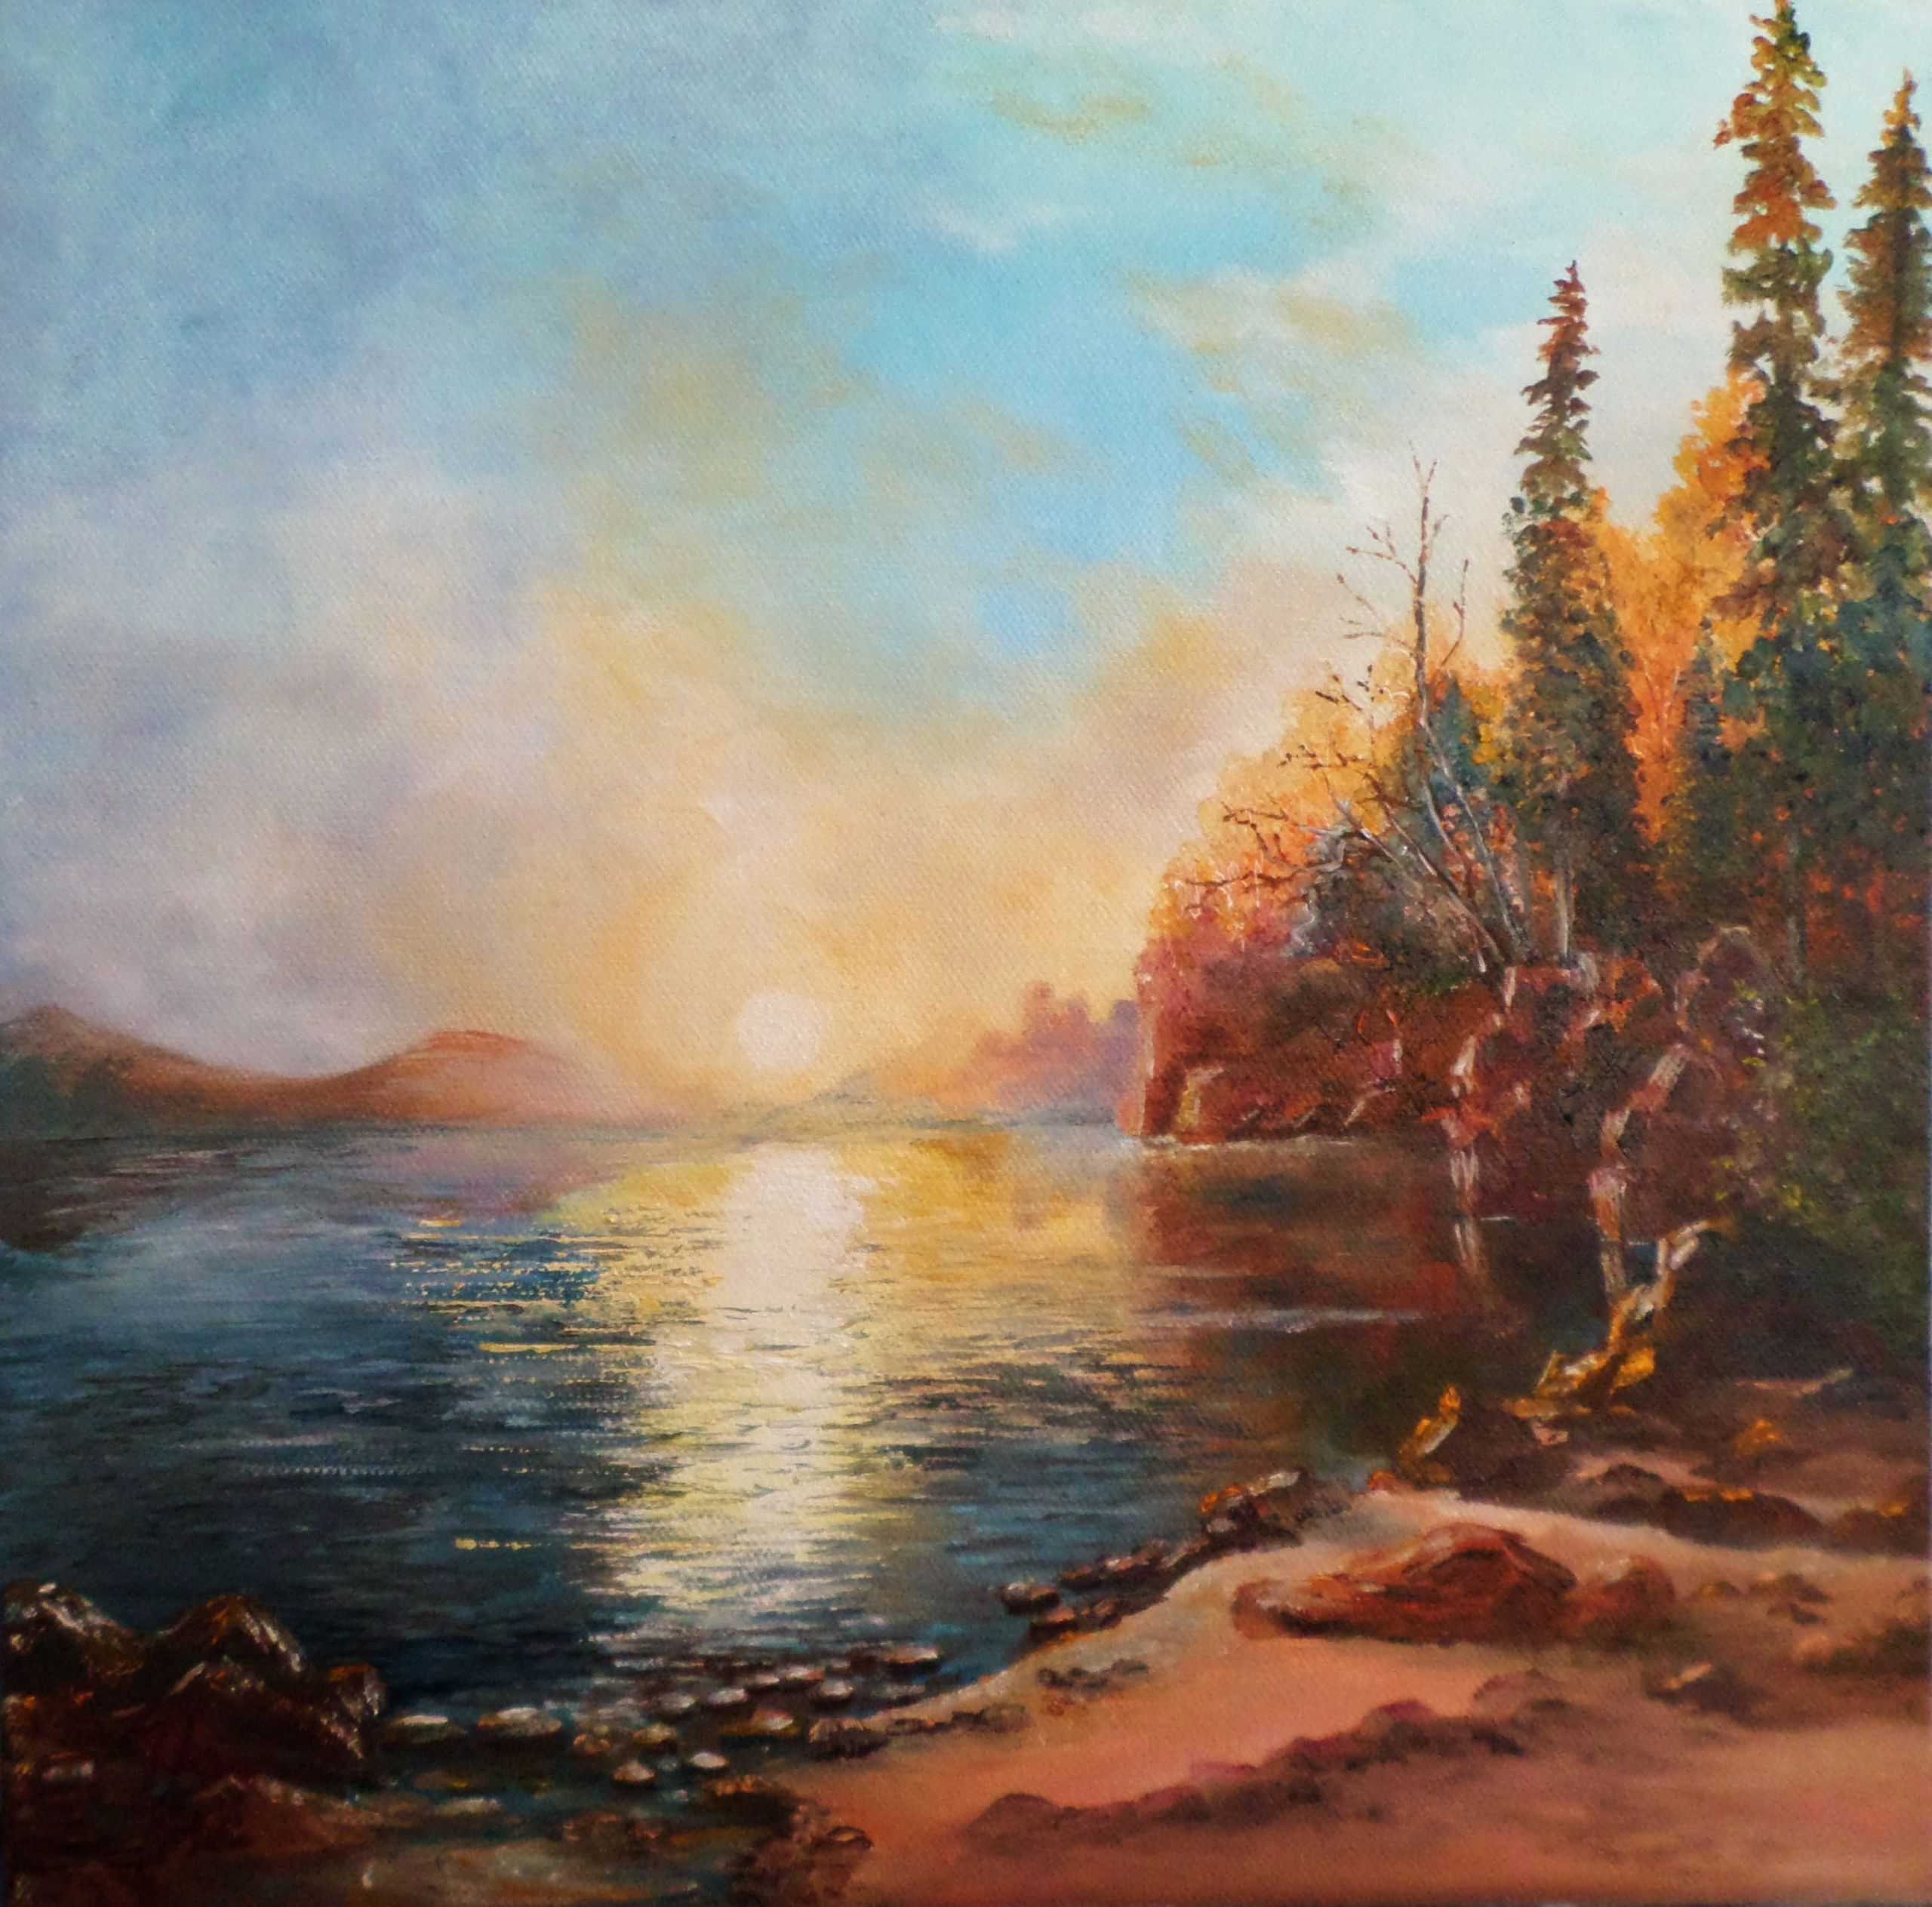 Renaissance Landscape Paintings
 Renaissance Lake Christina Himes